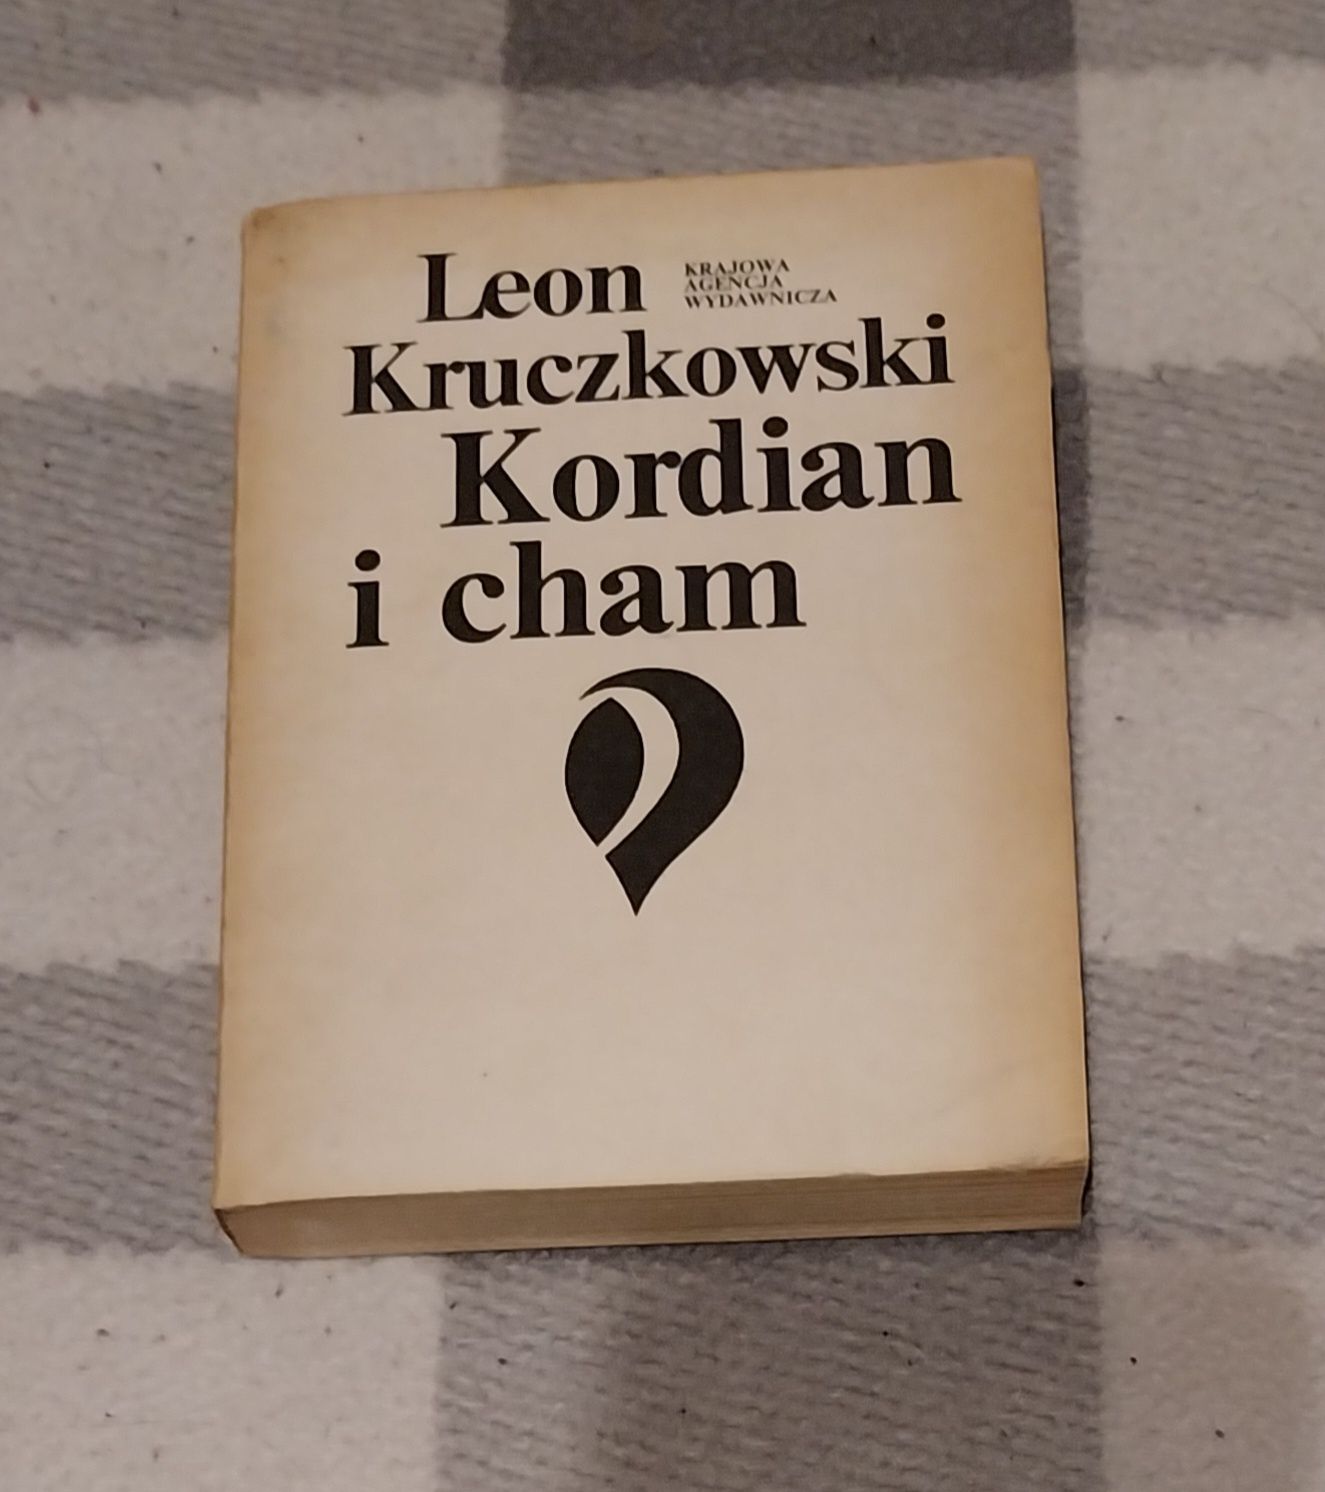 Kordian i cham, Leon Kruczkowski